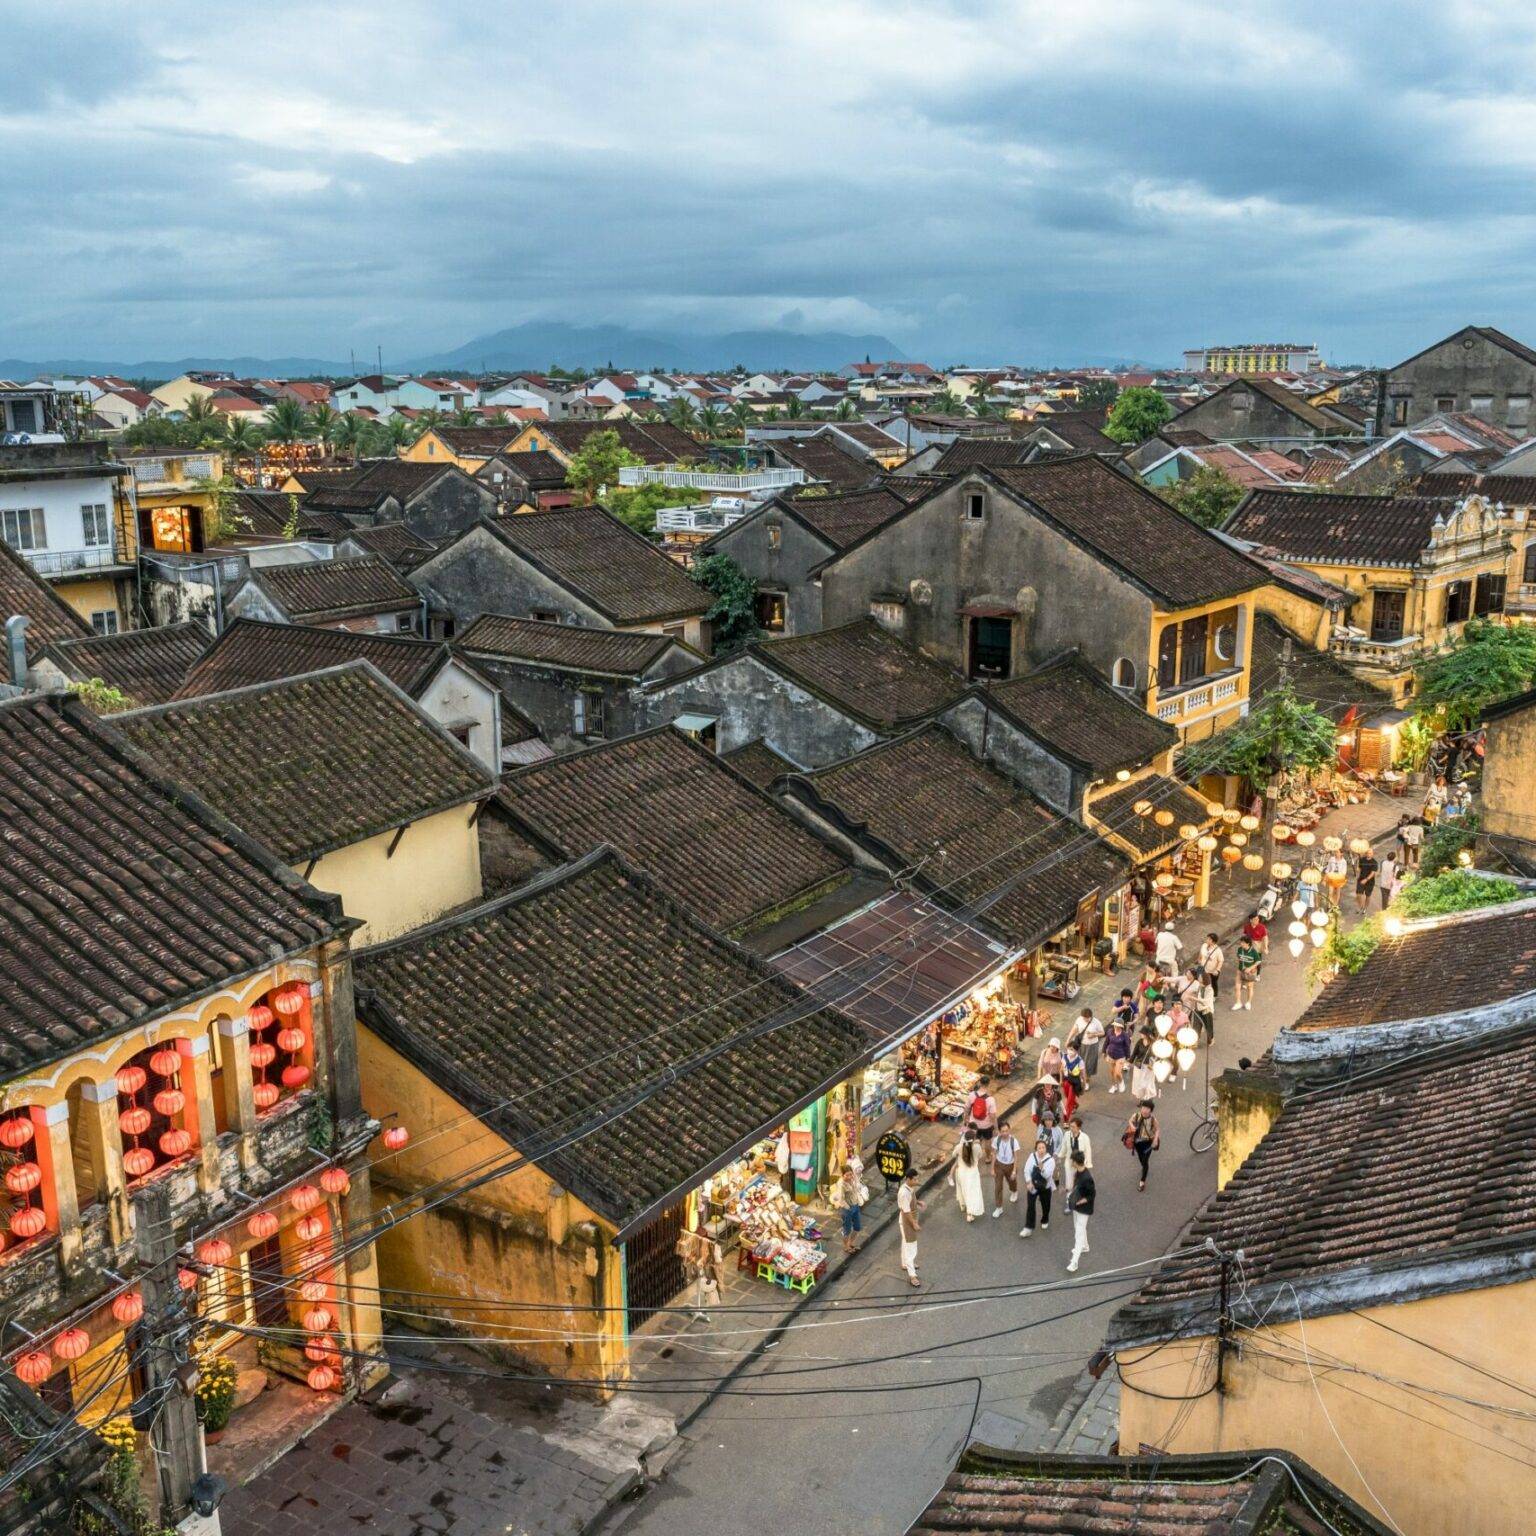 Der Blick von oben über die Dächer der Altstadt von Hoi An.